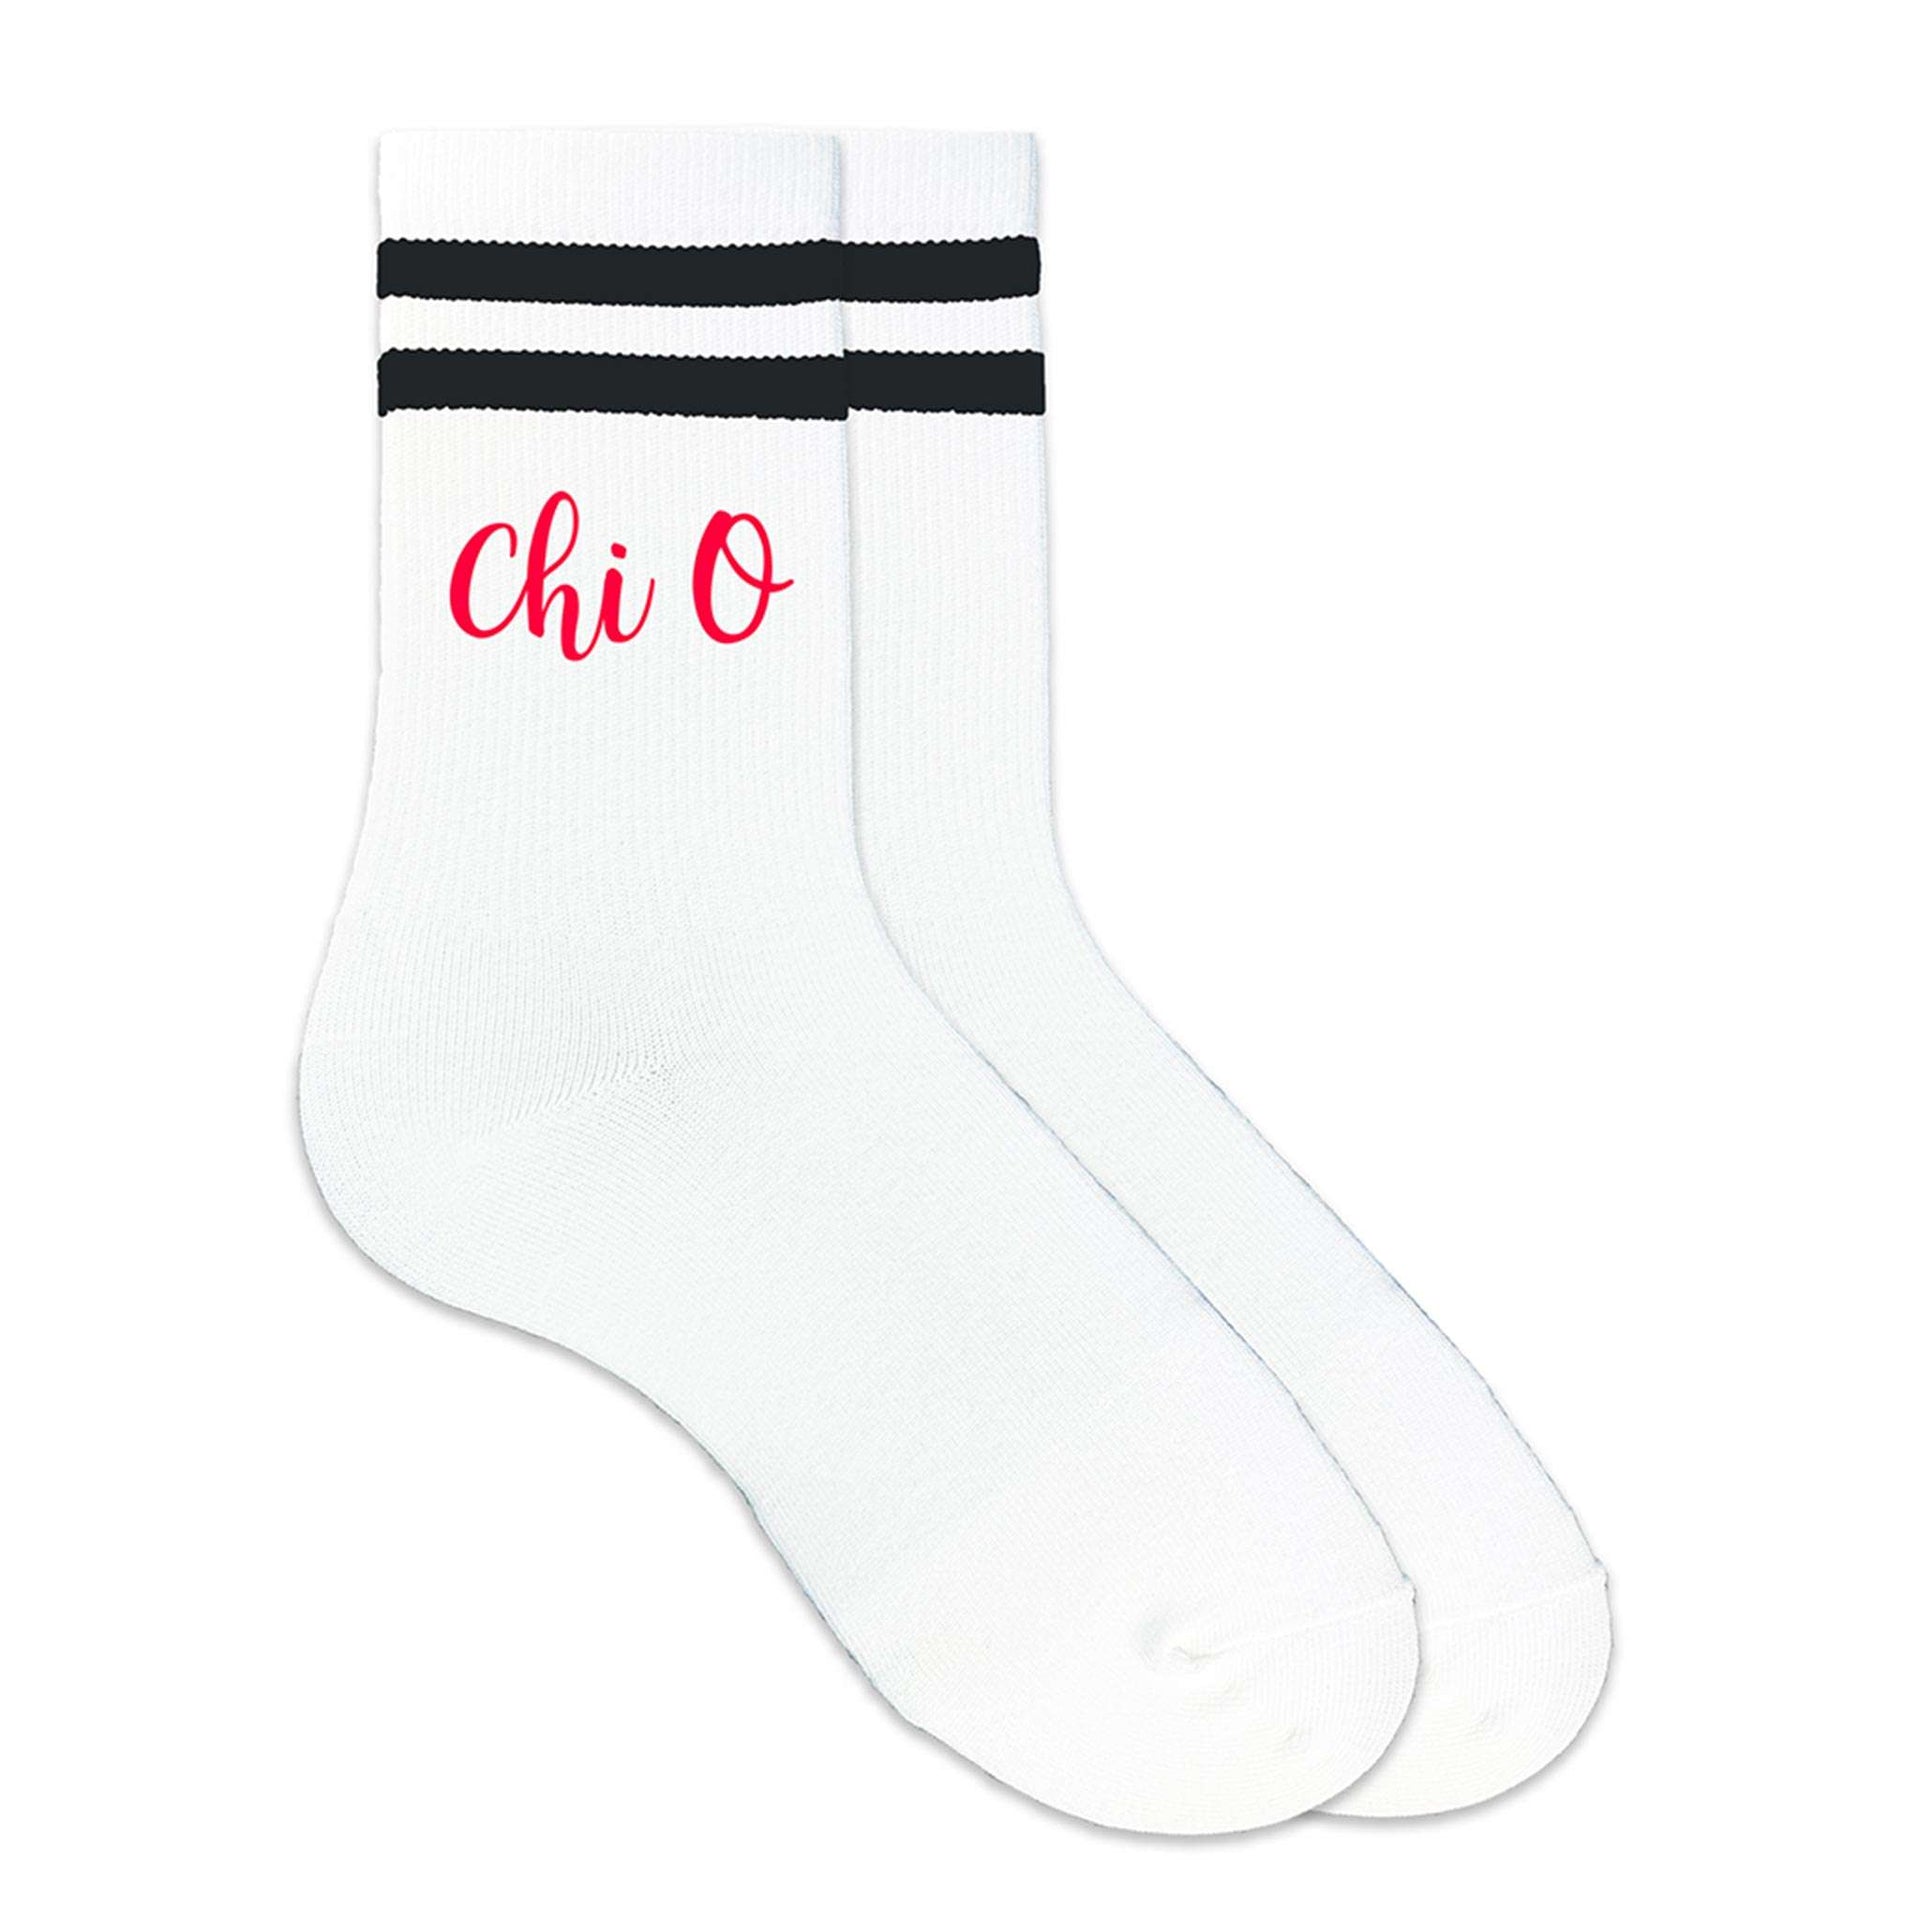 Chi O sorority nickname custom printed on black striped crew socks